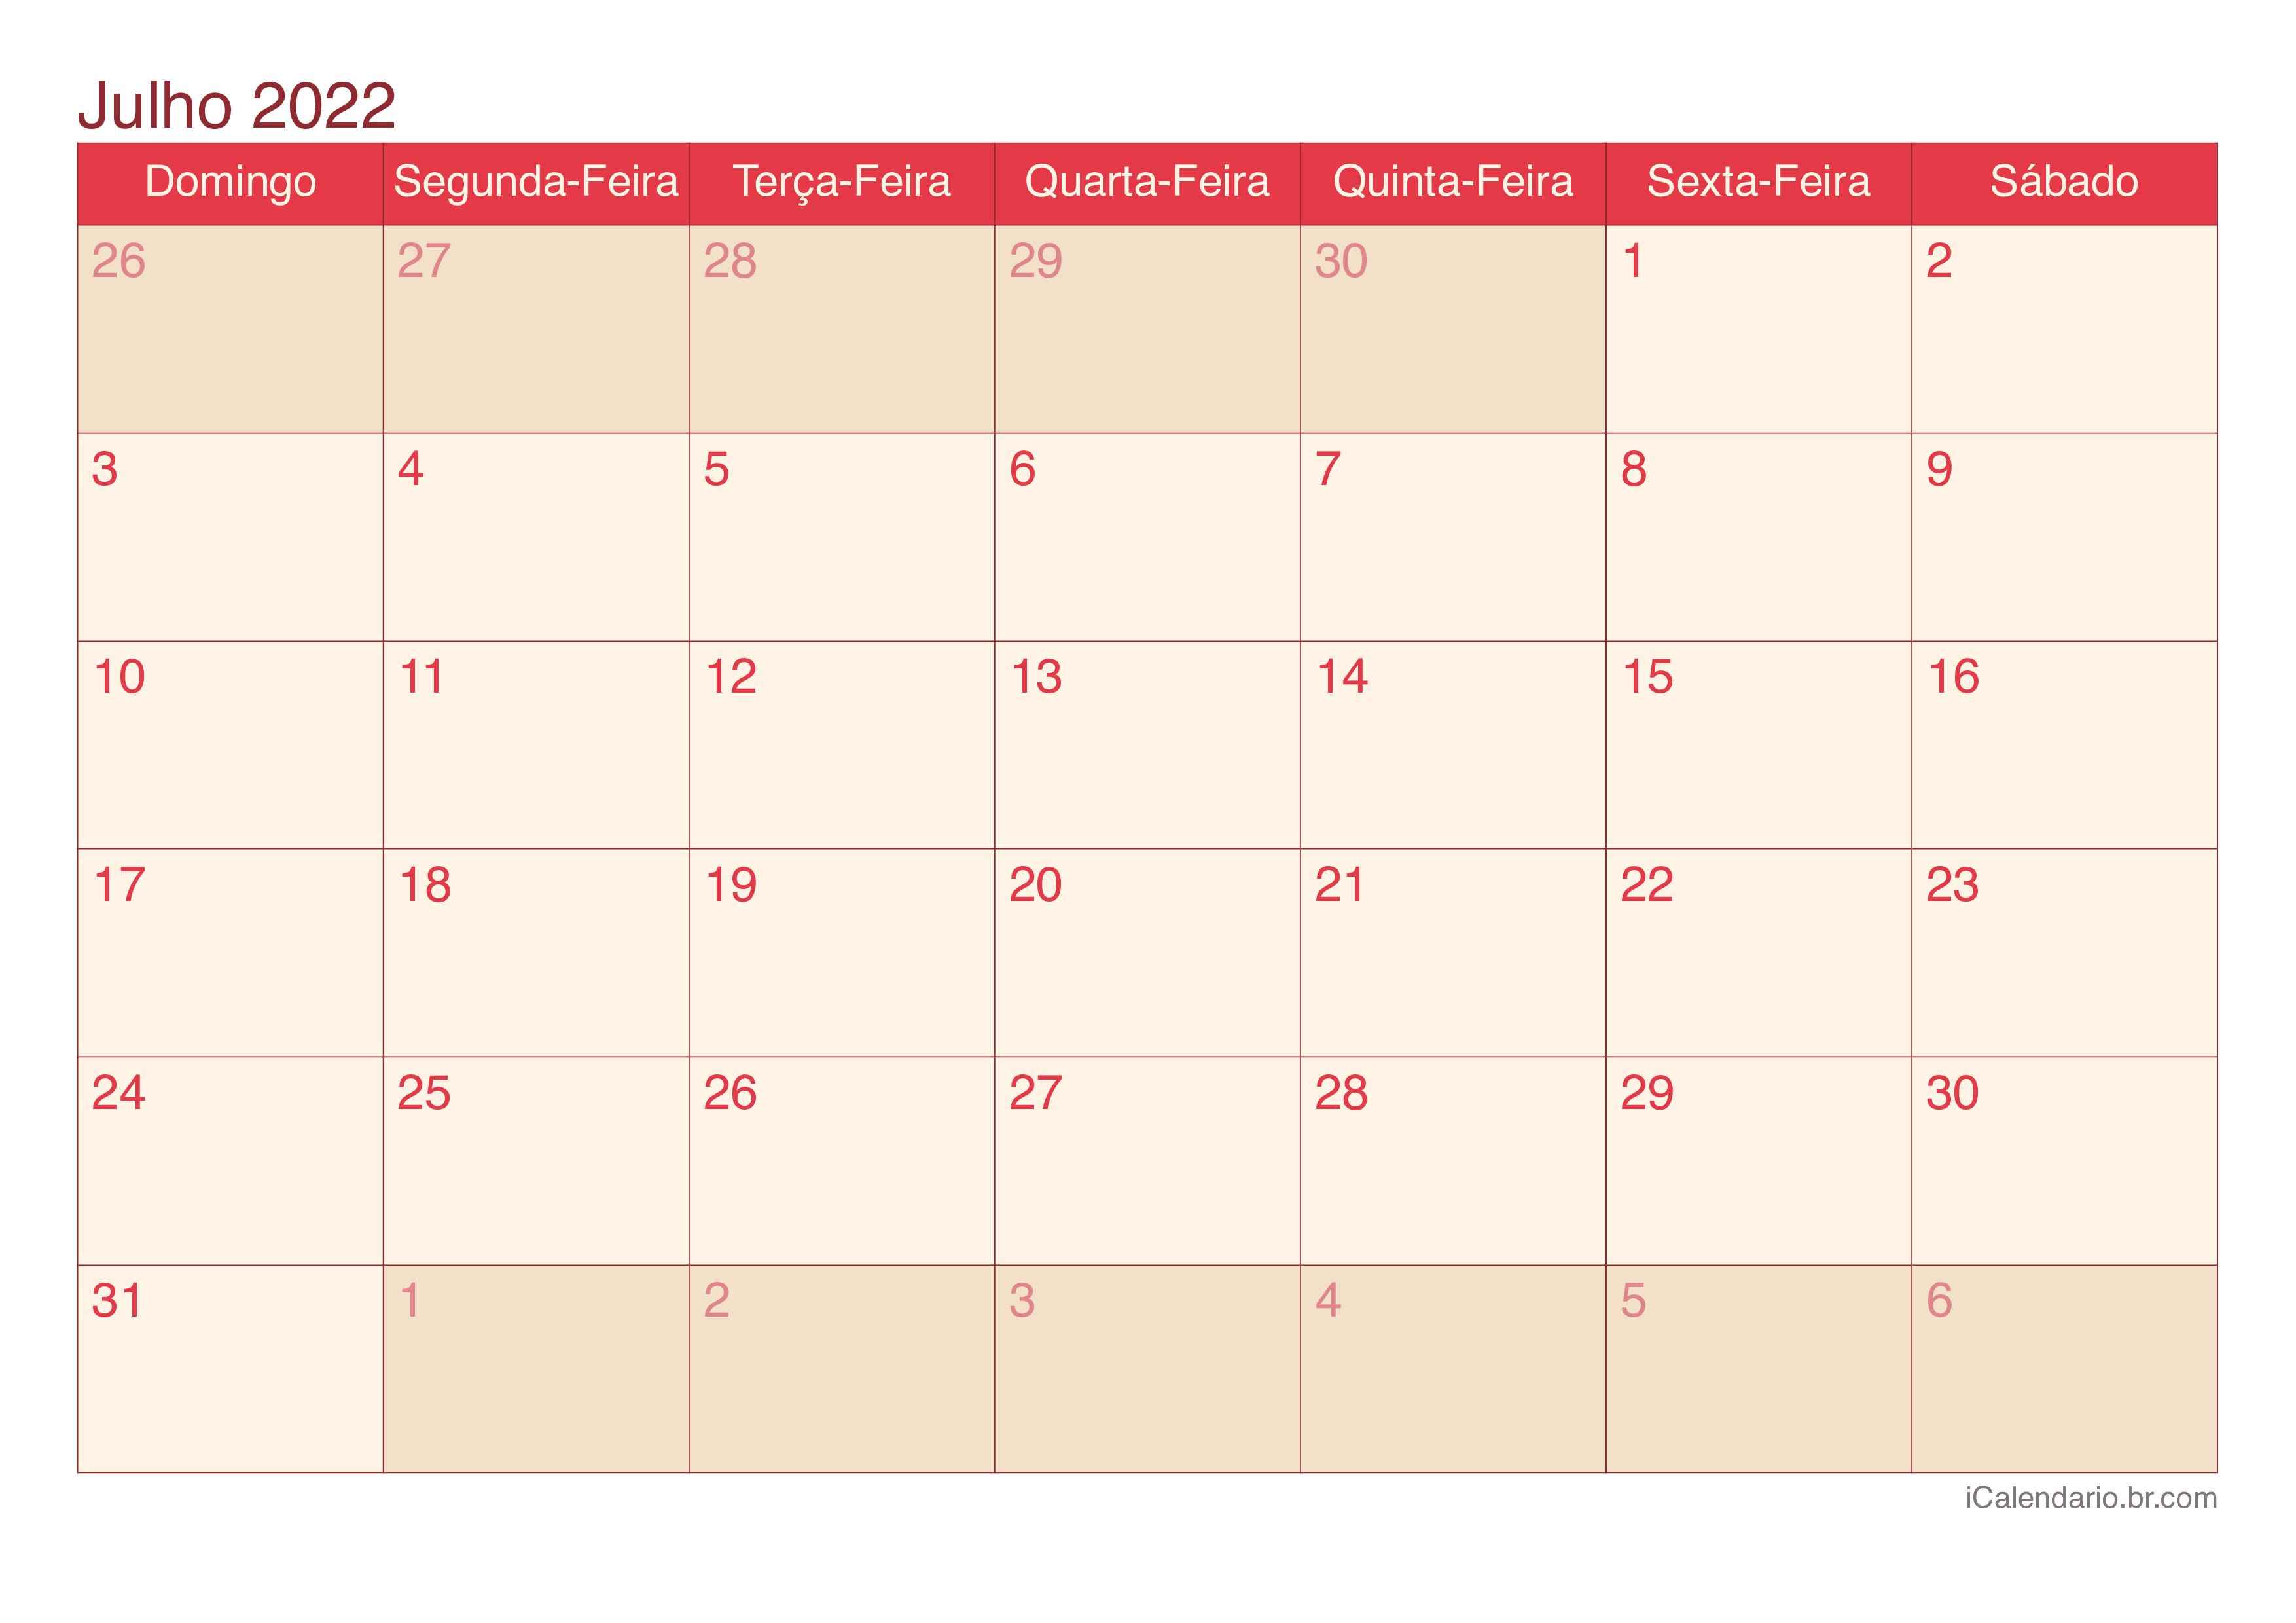 Calendário de julho 2022 - Cherry